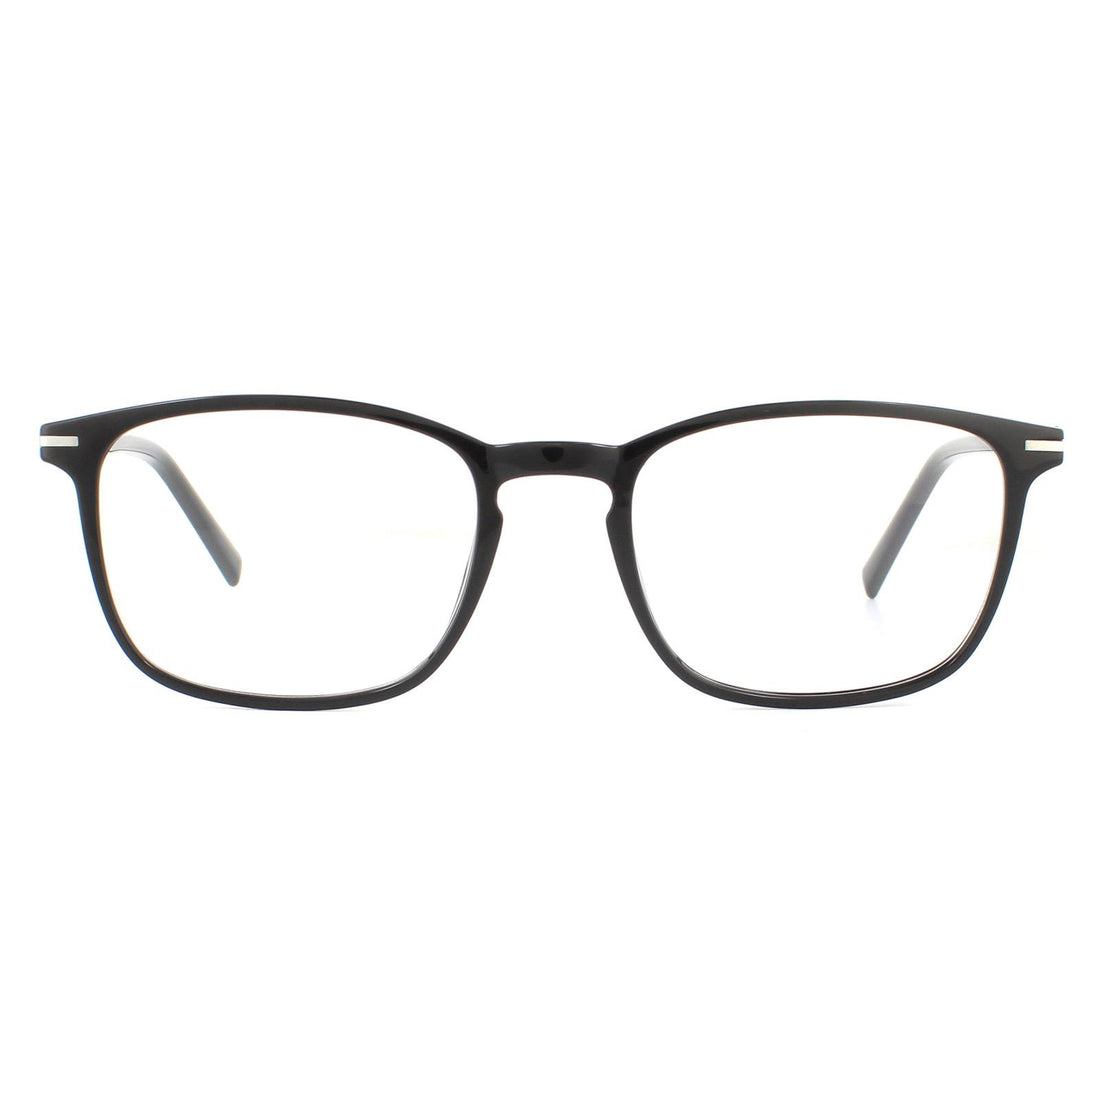 SunOptic AC9 Glasses Frames Black